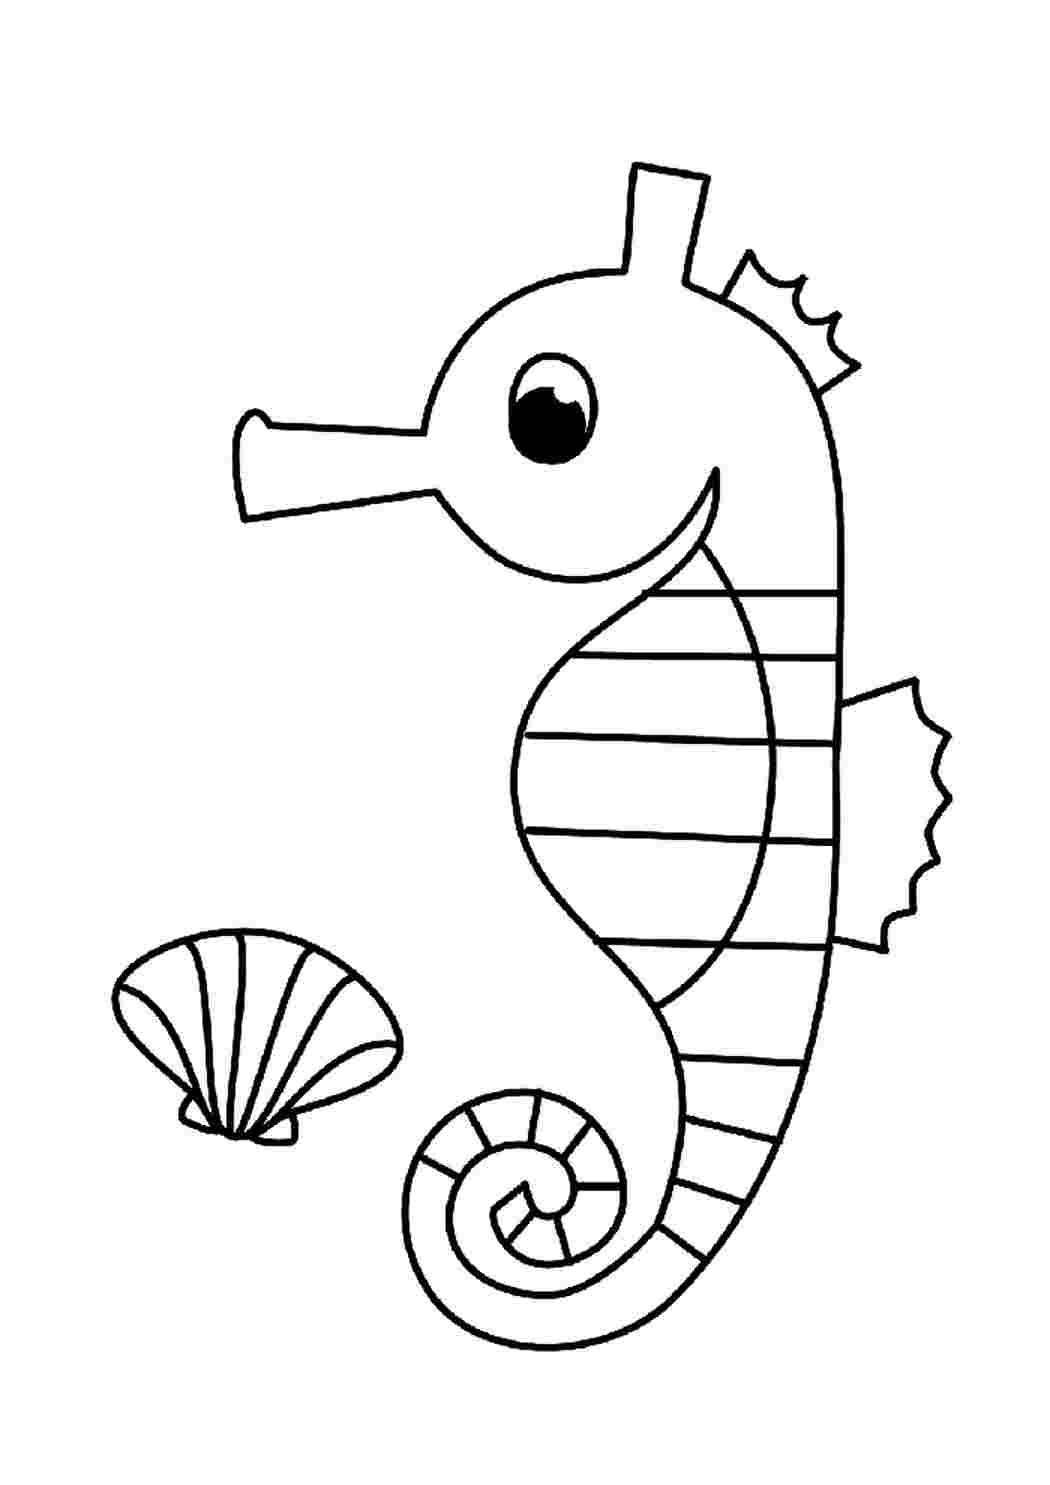 Морской конек раскраска для детей